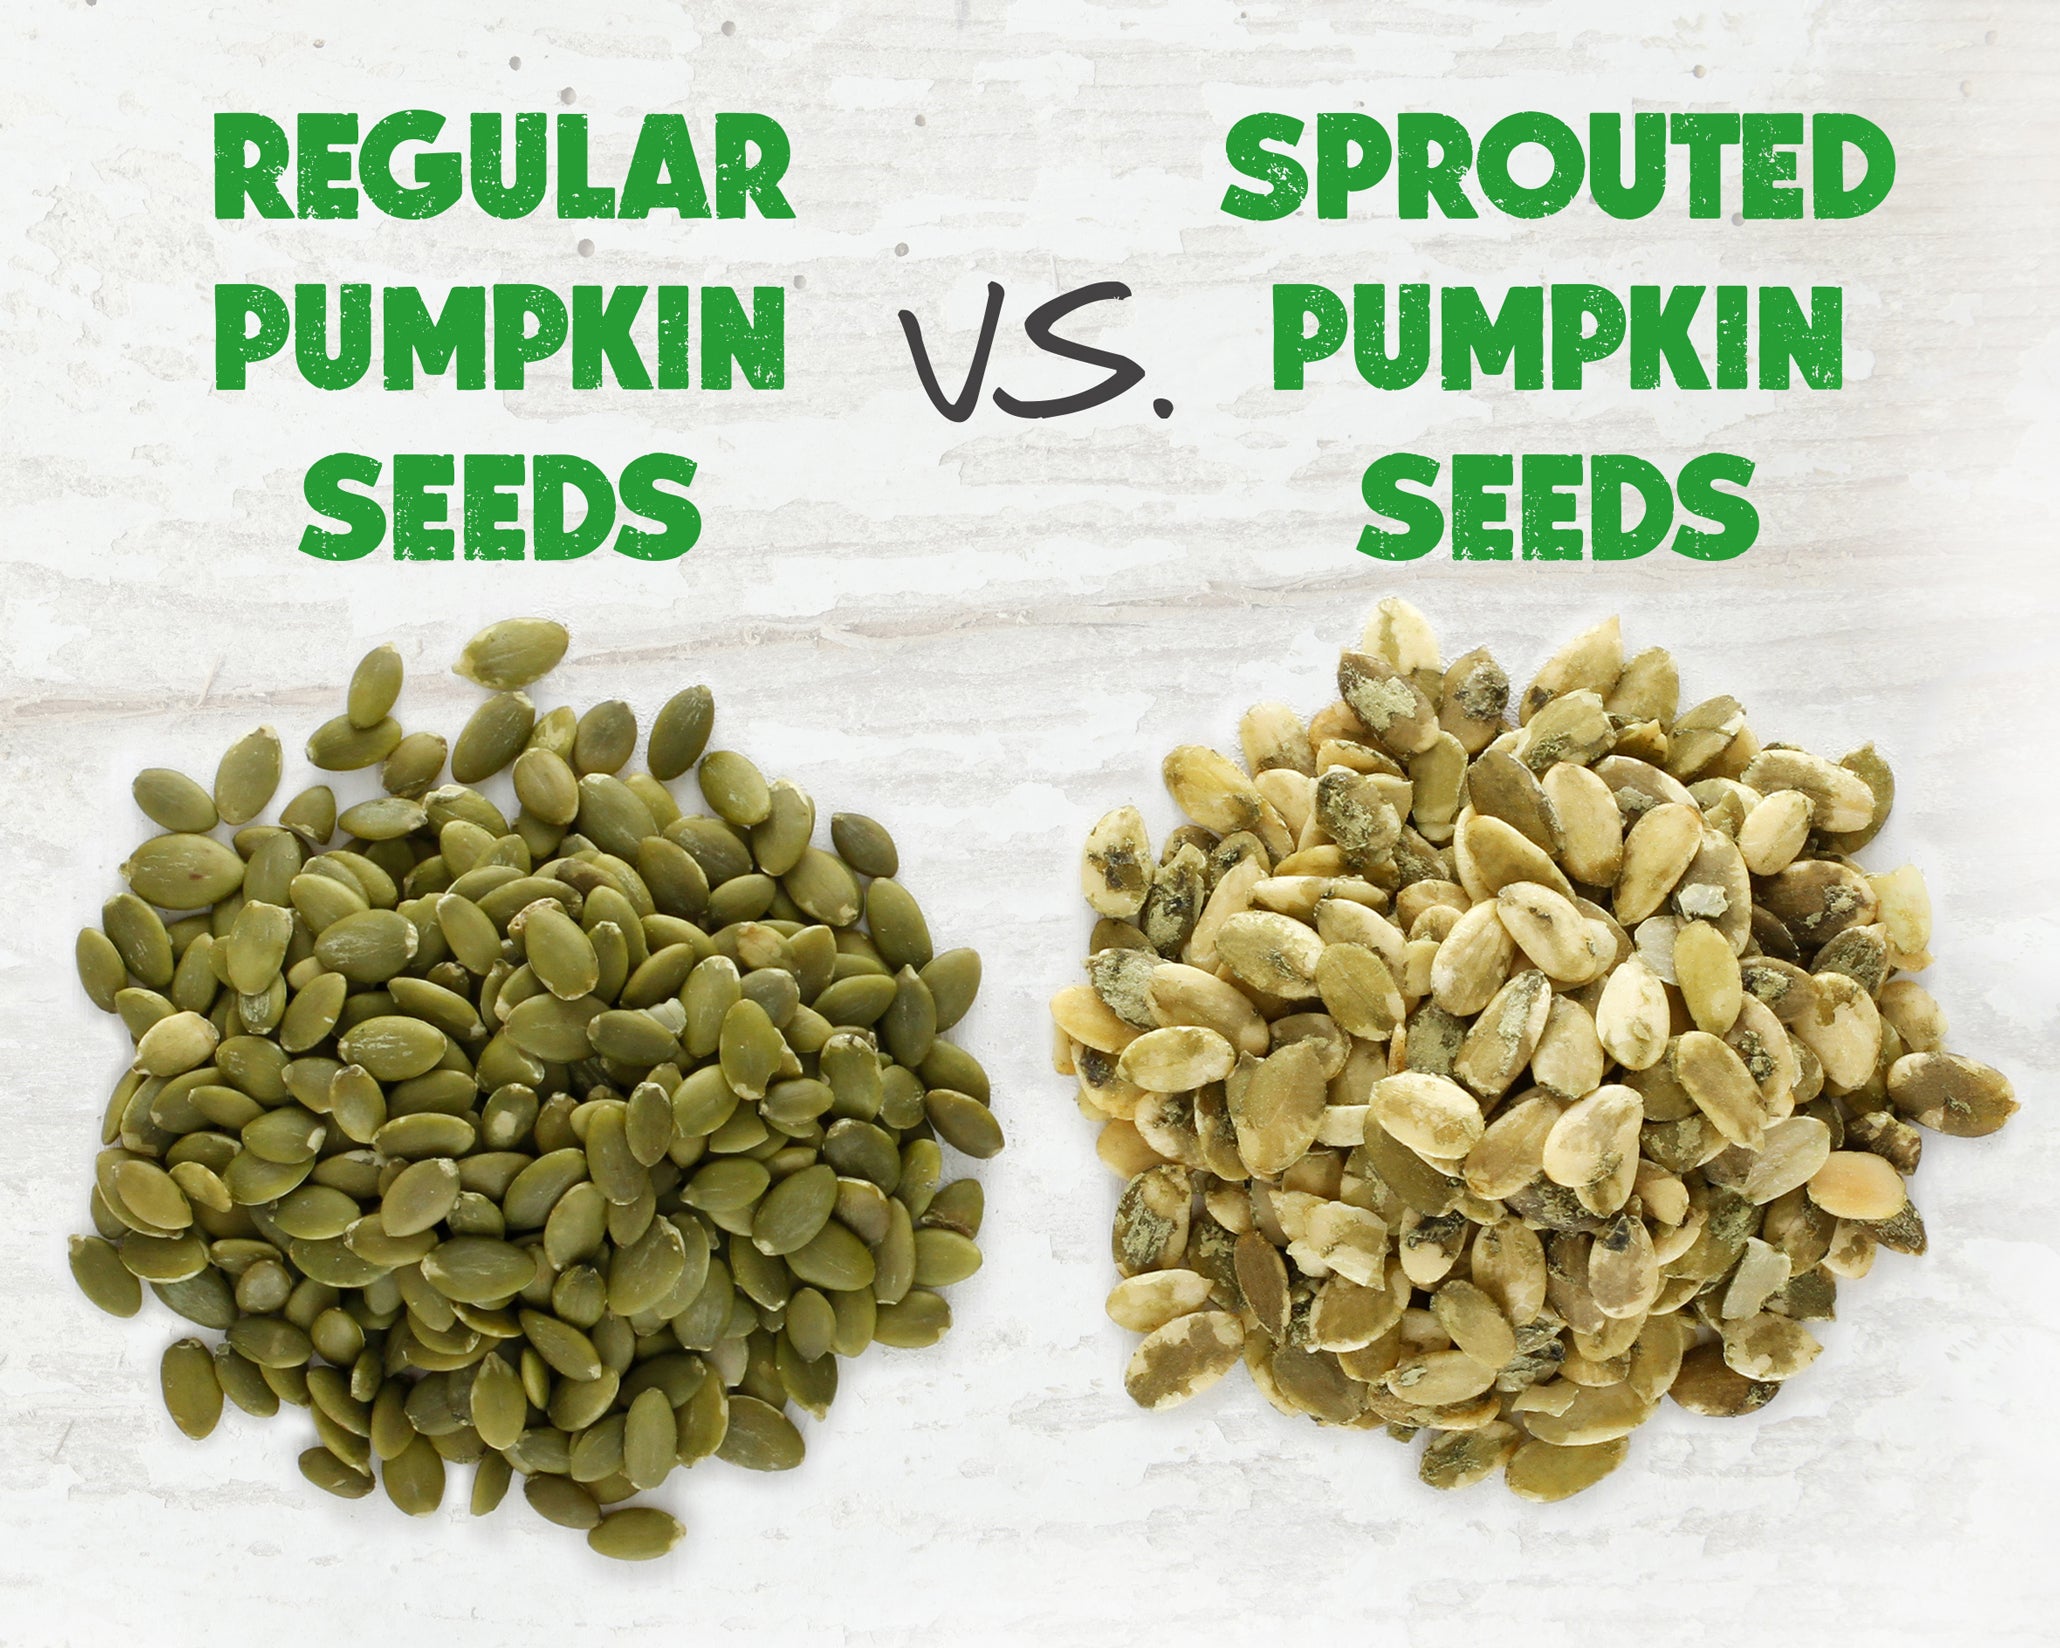 Sprouted Pumpkin Seeds vs. Regular Pumpkin Seeds